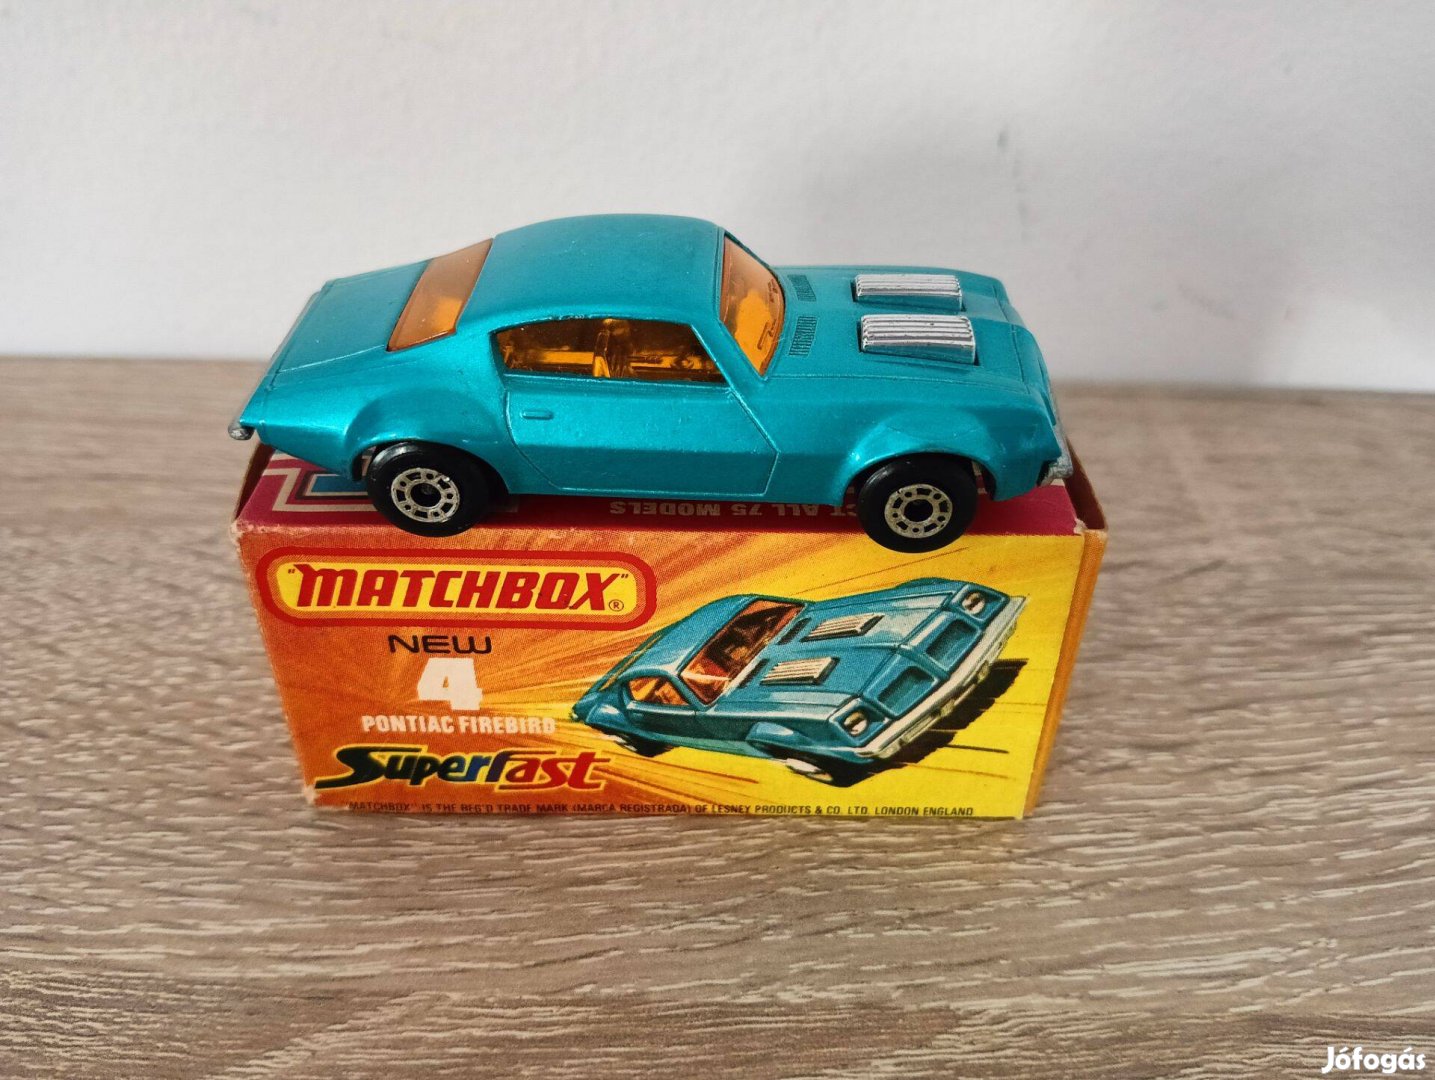 Matchbox Superfast No. 4 Pontiac Firebird 1975